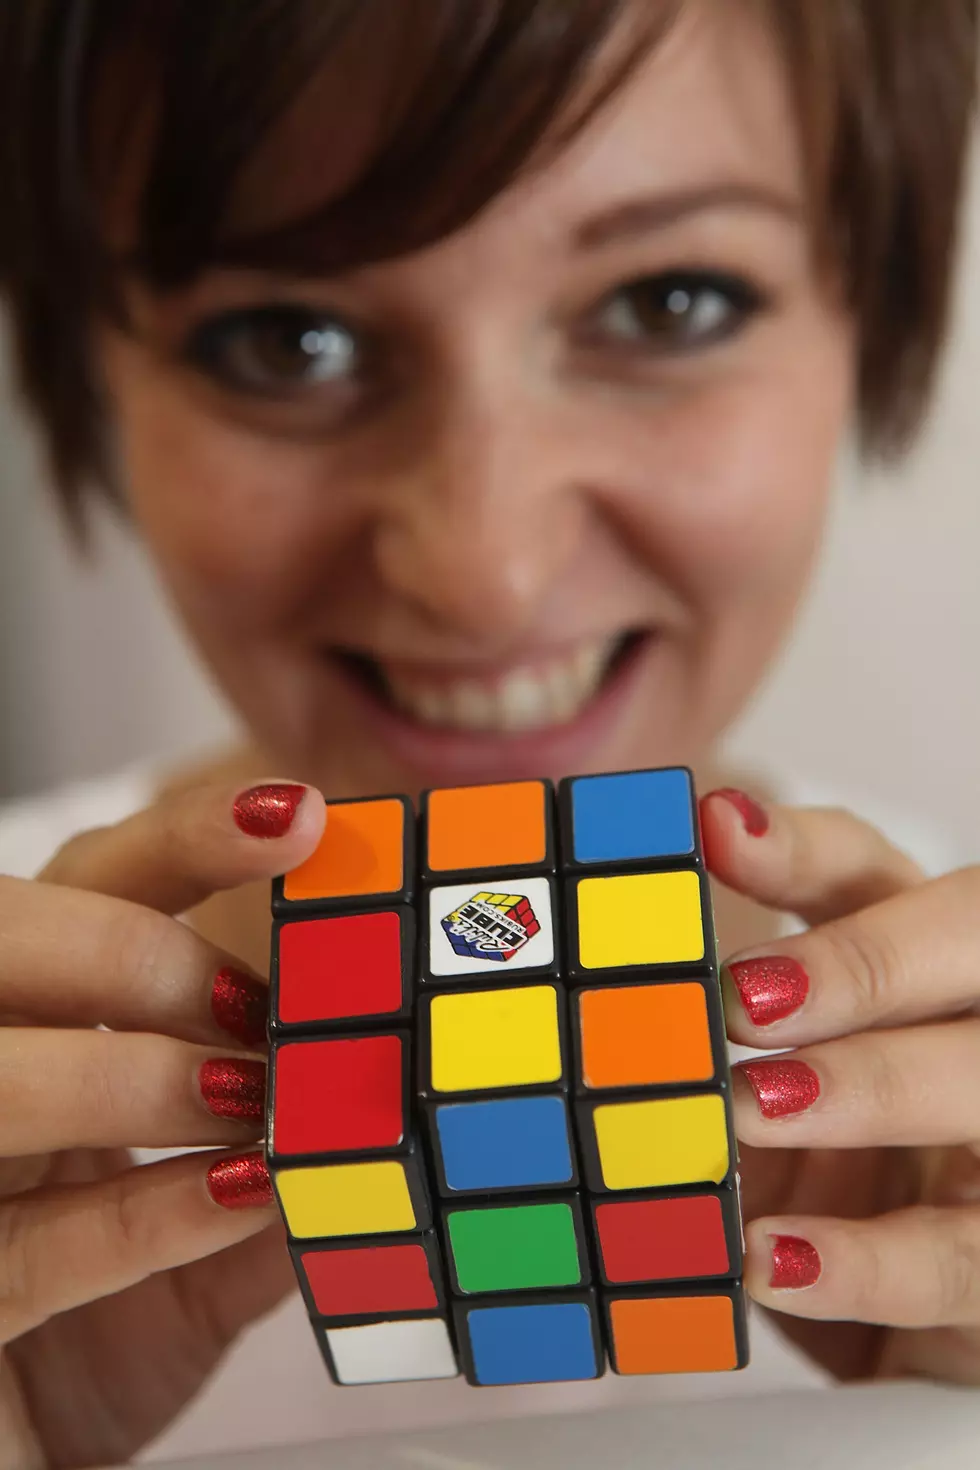 40th Anniversary of Rubik’s Cube